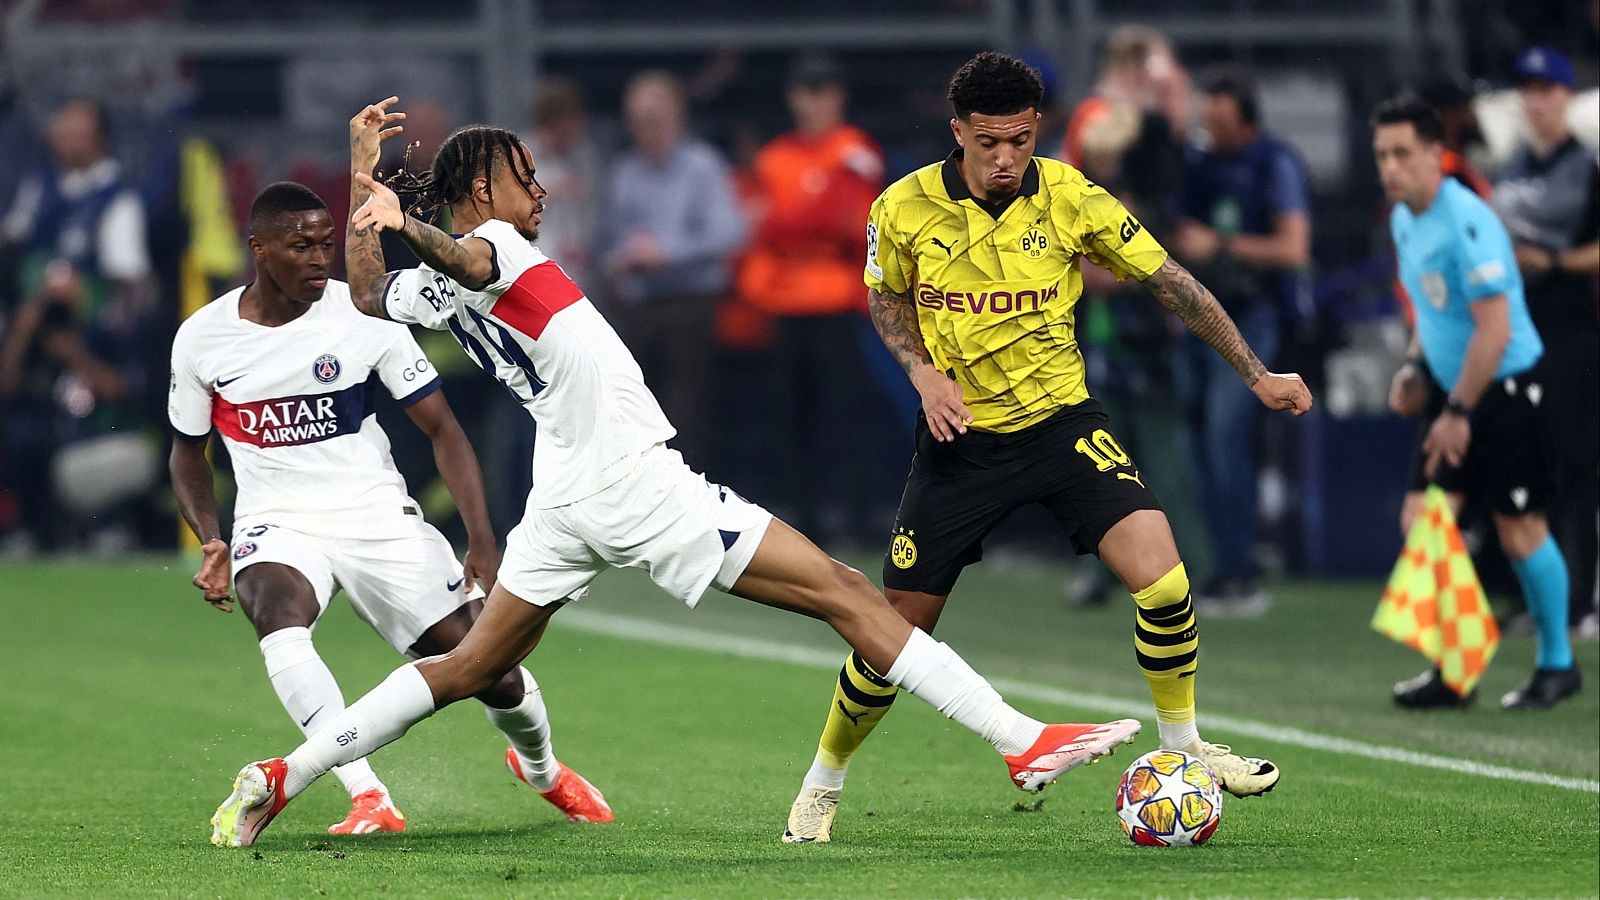 El PSG pierde ante el Dortmund: ¿resultado que interesa al Real Madrid?